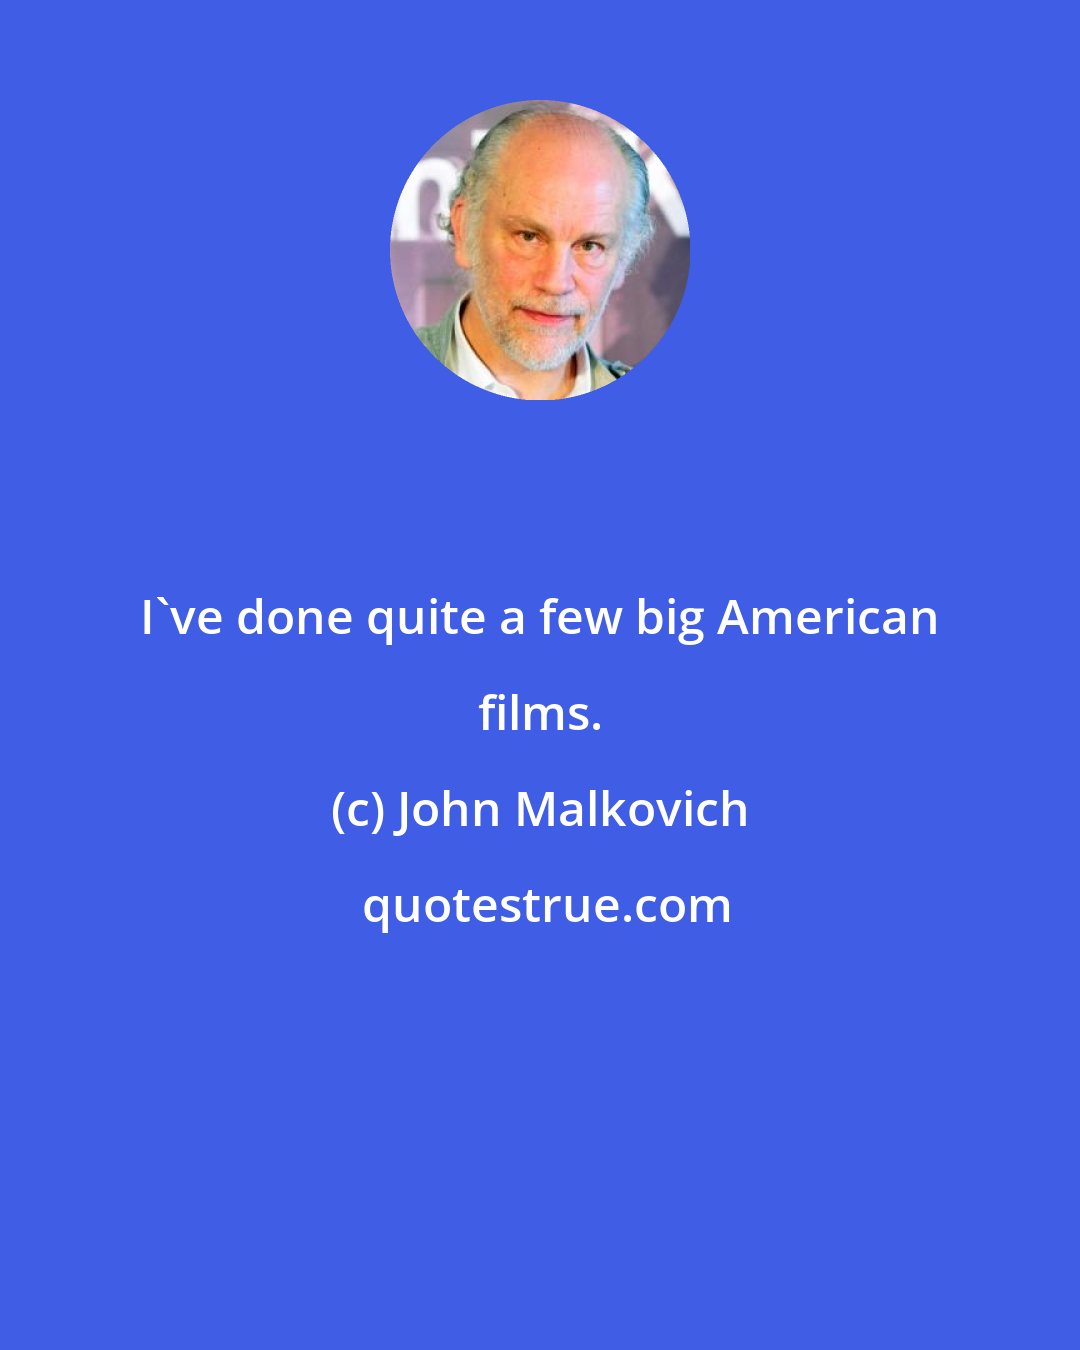 John Malkovich: I've done quite a few big American films.